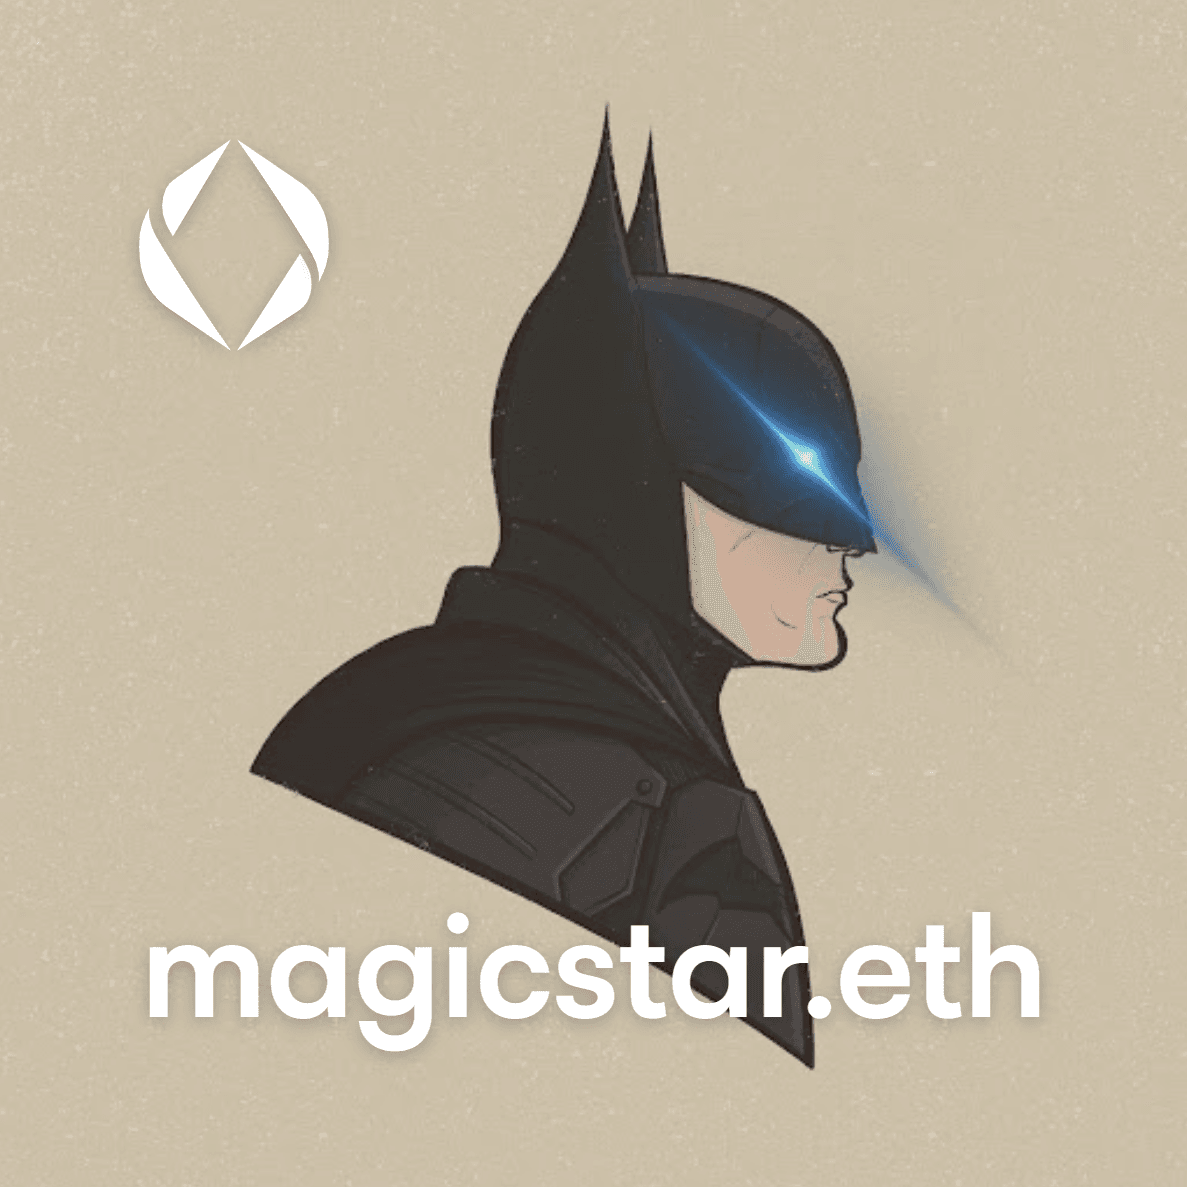 magicstar